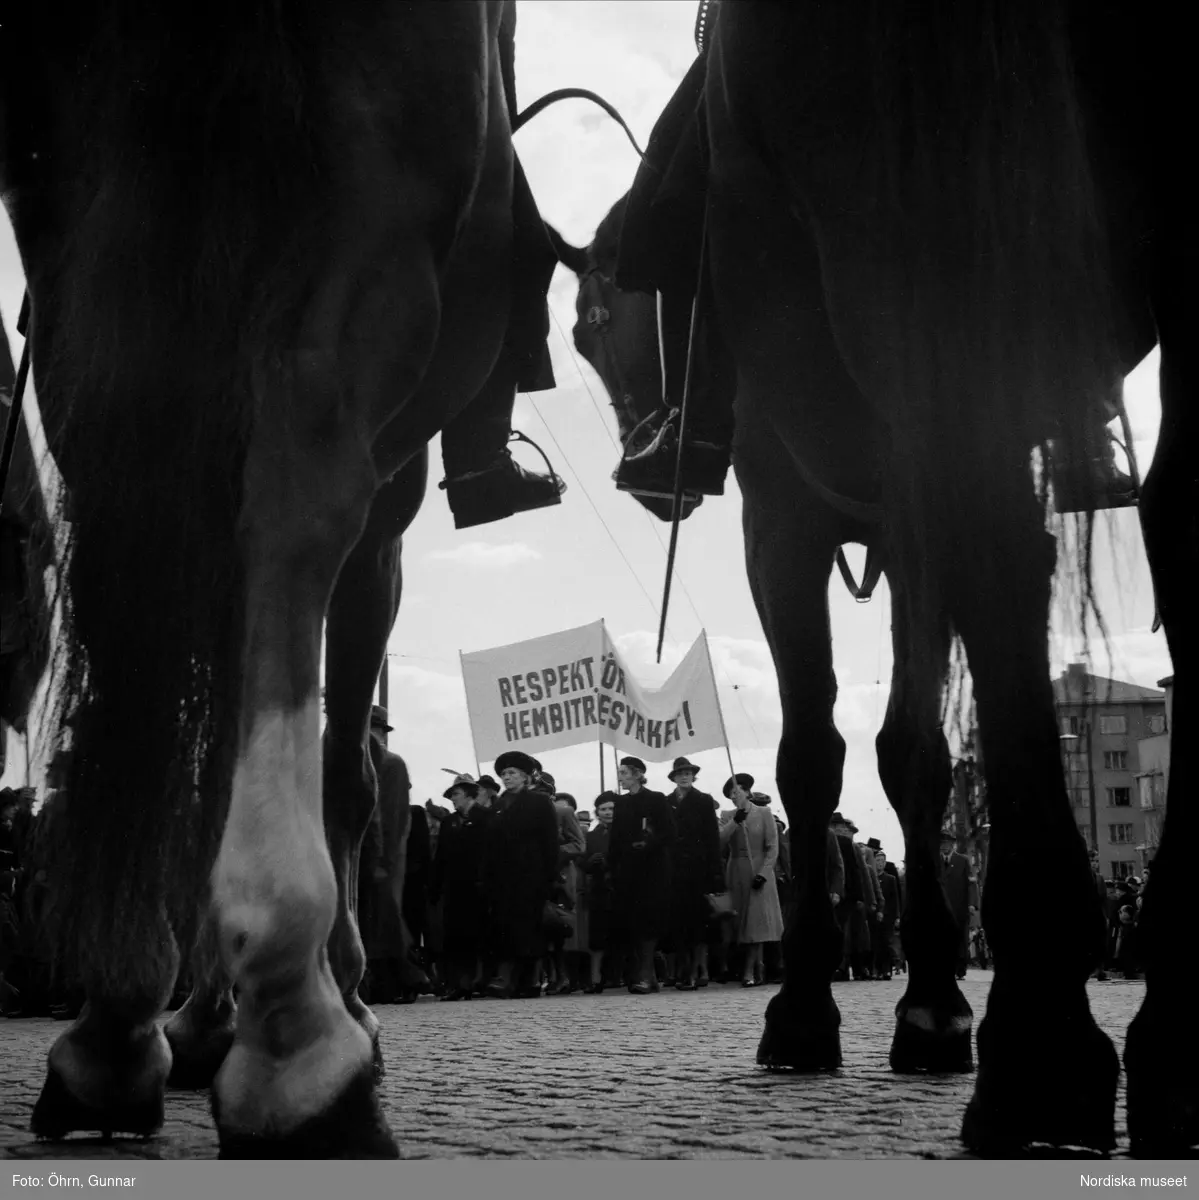 Förstamajdemonstration. Hästar i förgrunden, i bakgrunden demonstranter med banderoll "Respekt för hembiträdesyrket".